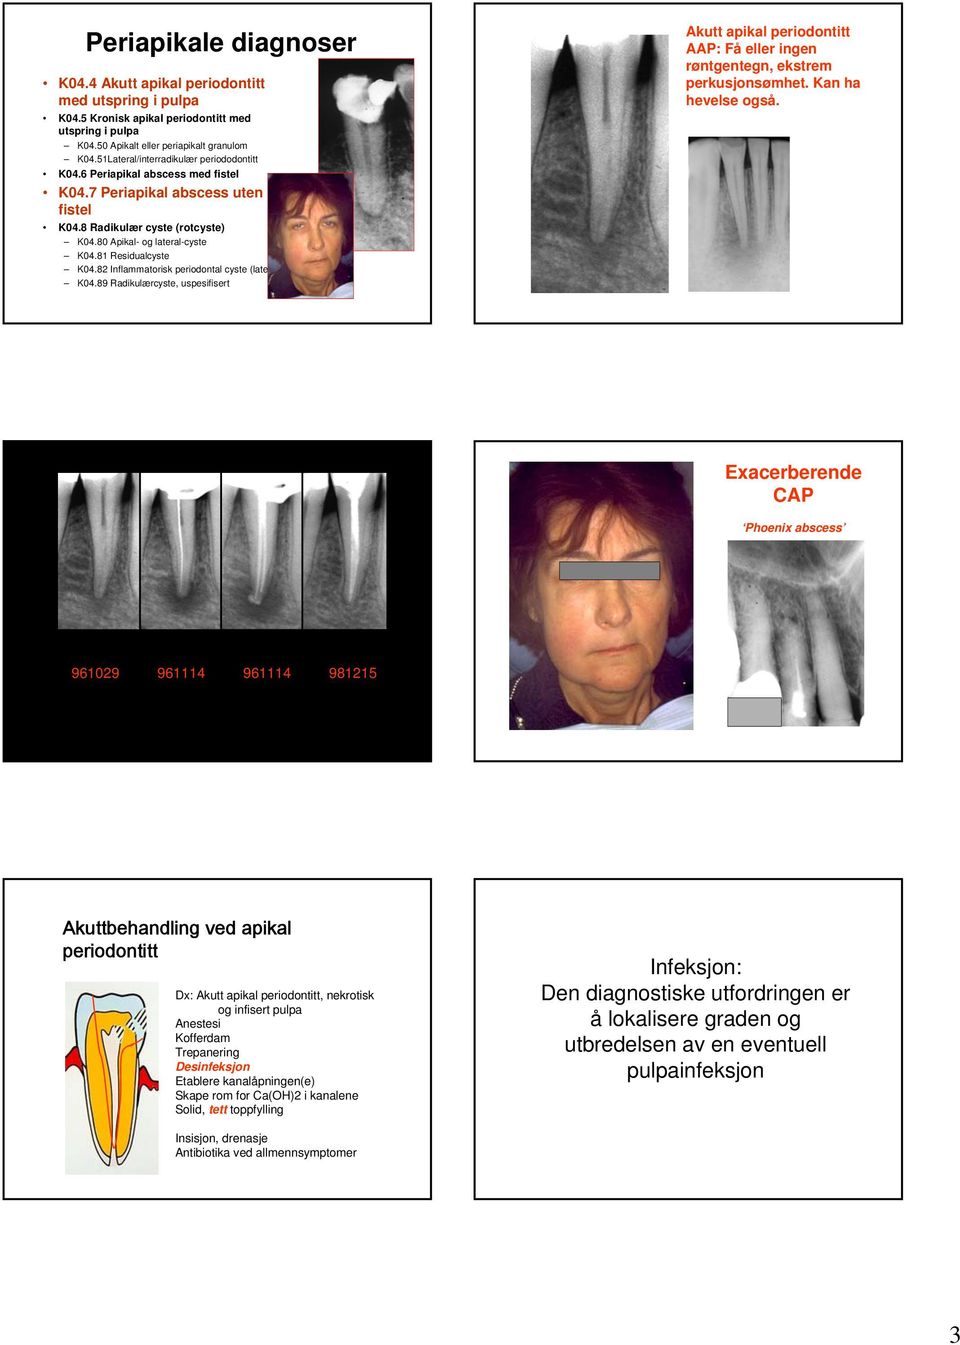 81 Residualcyste K04.82 Inflammatorisk periodontal cyste (lateral) K04.89 Radikulærcyste, uspesifisert Akutt apikal periodontitt AAP: Få eller ingen røntgentegn, ekstrem perkusjonsømhet.